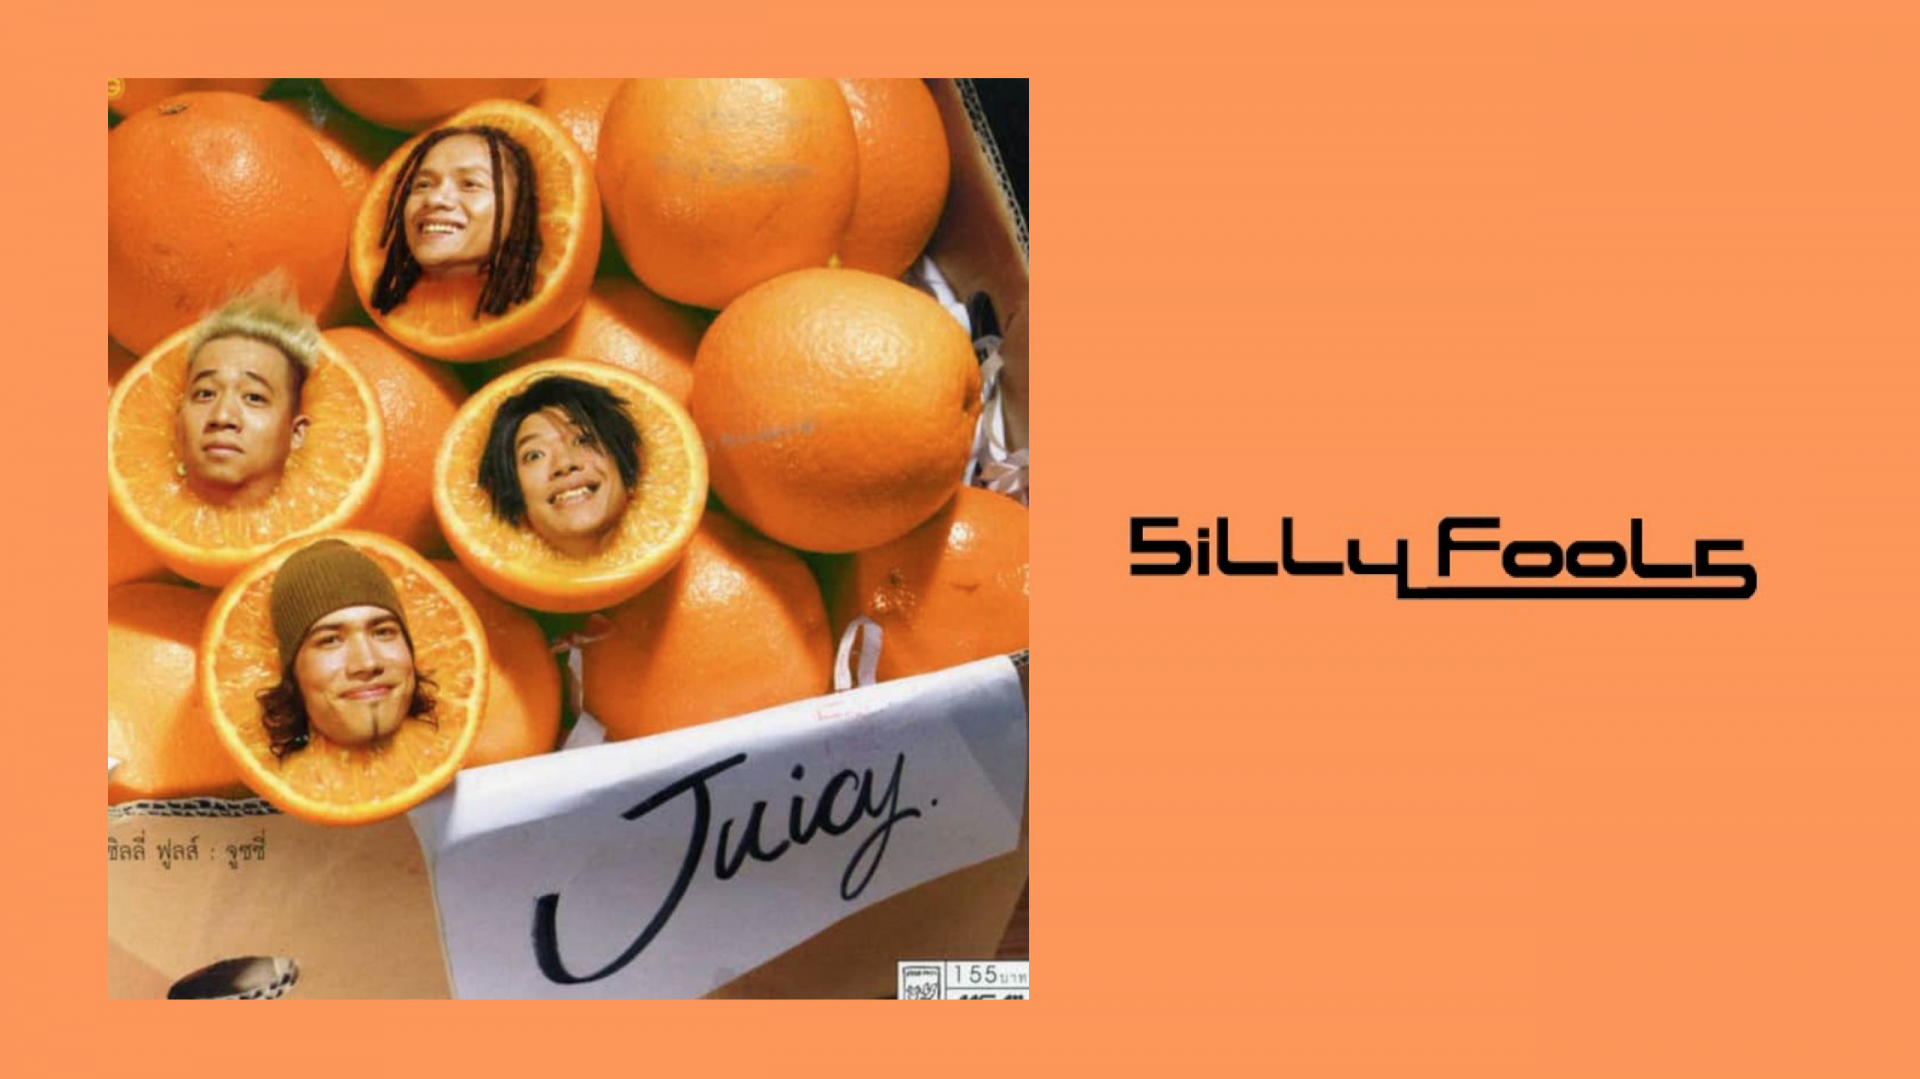 19 ปี อัลบั้ม “Juicy” งานดนตรีเปรี้ยว ๆ มันส์ ๆ ในแบบฉบับของ ‘Silly Fools’